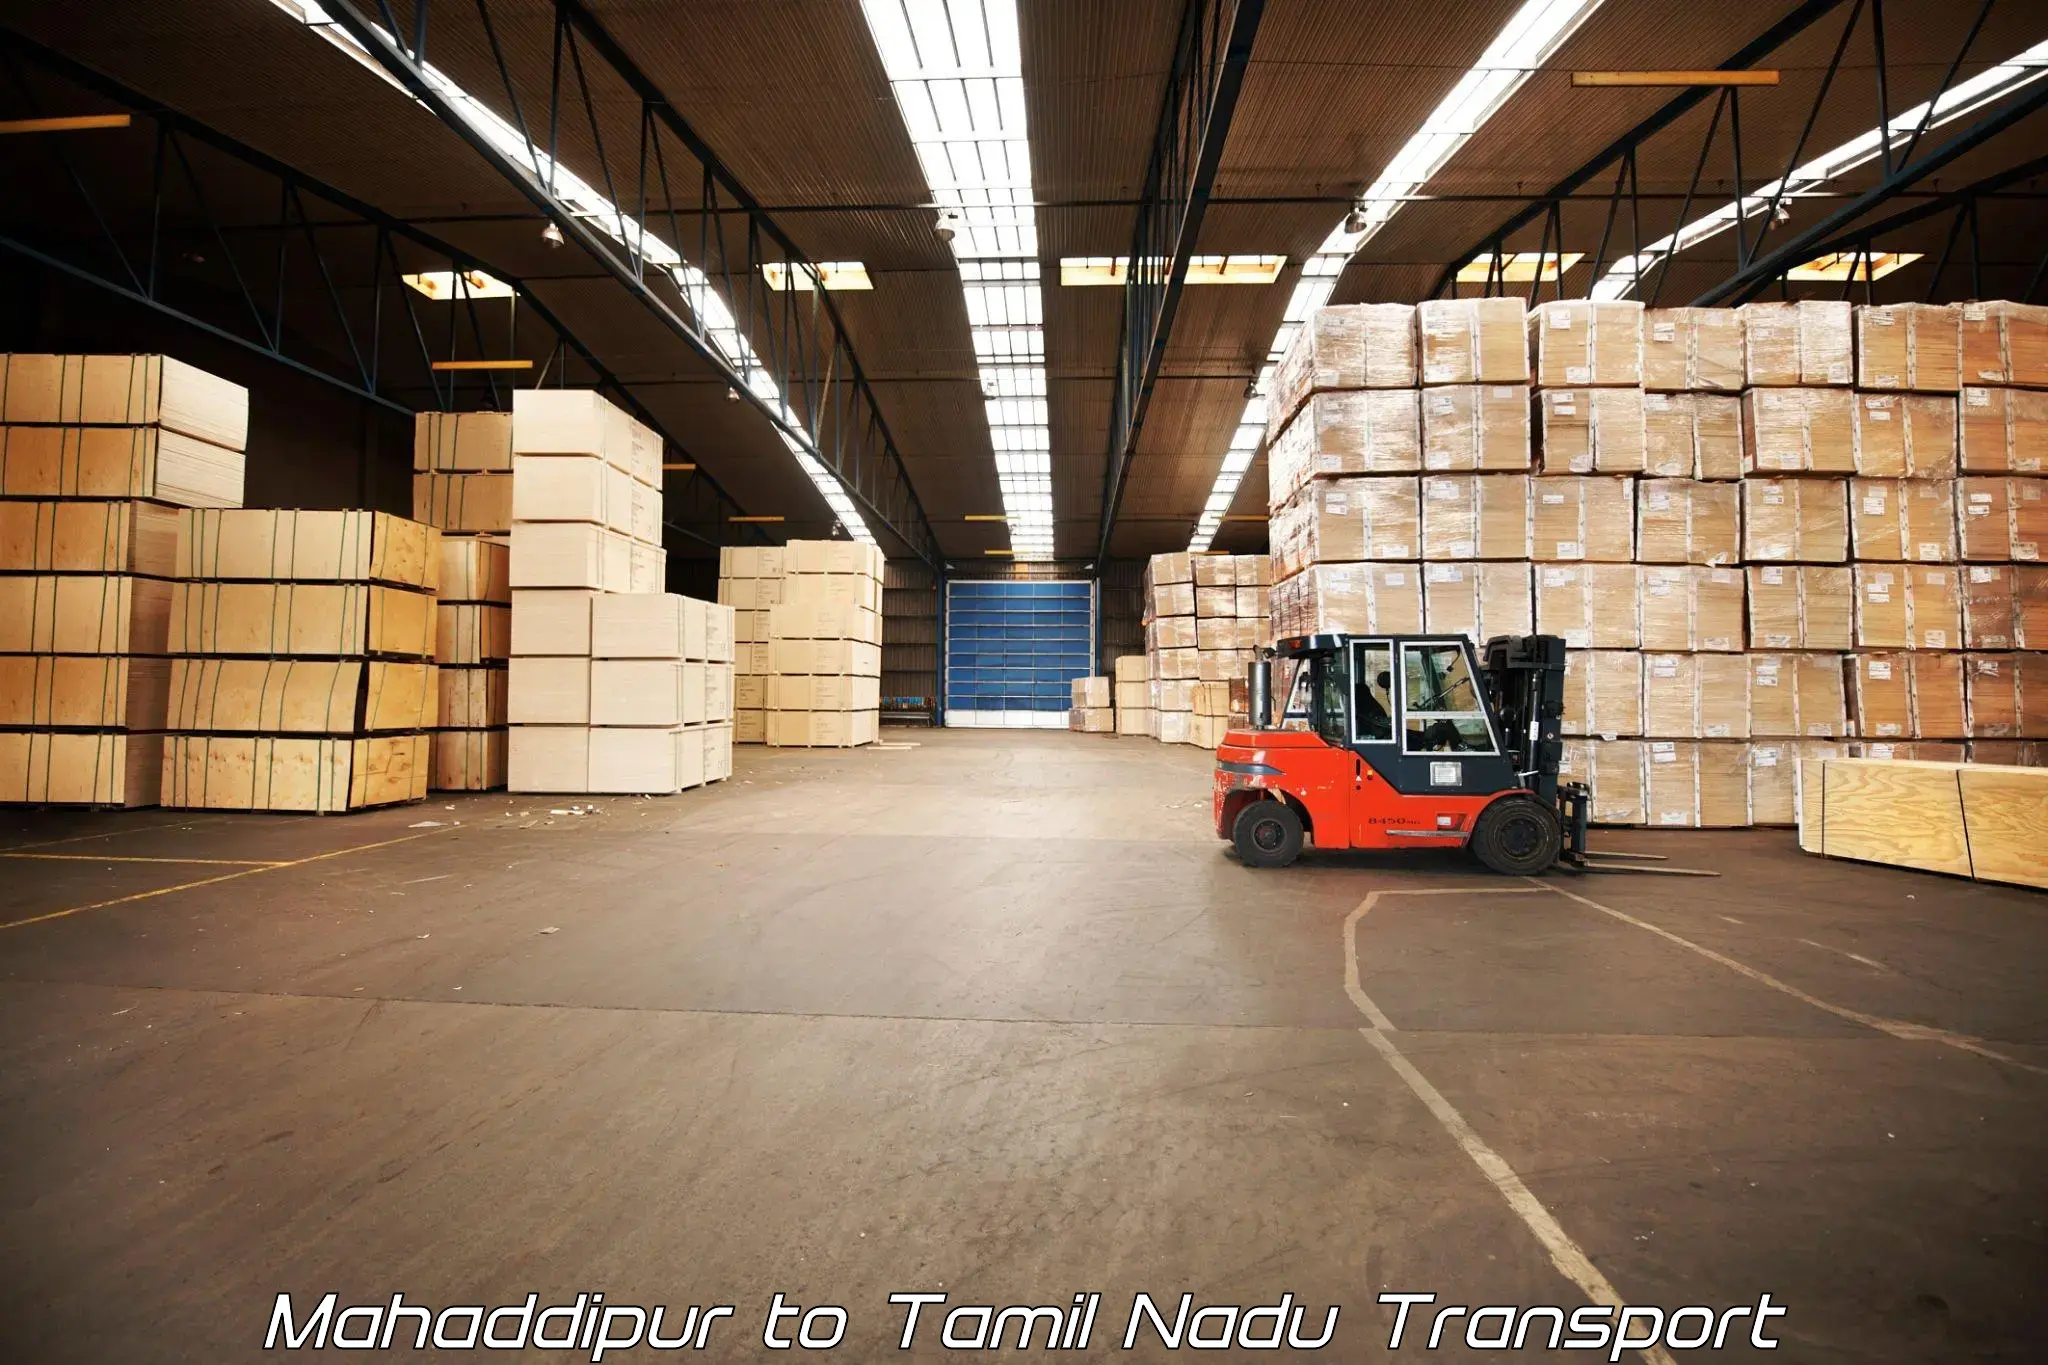 Delivery service Mahaddipur to Ayyampettai